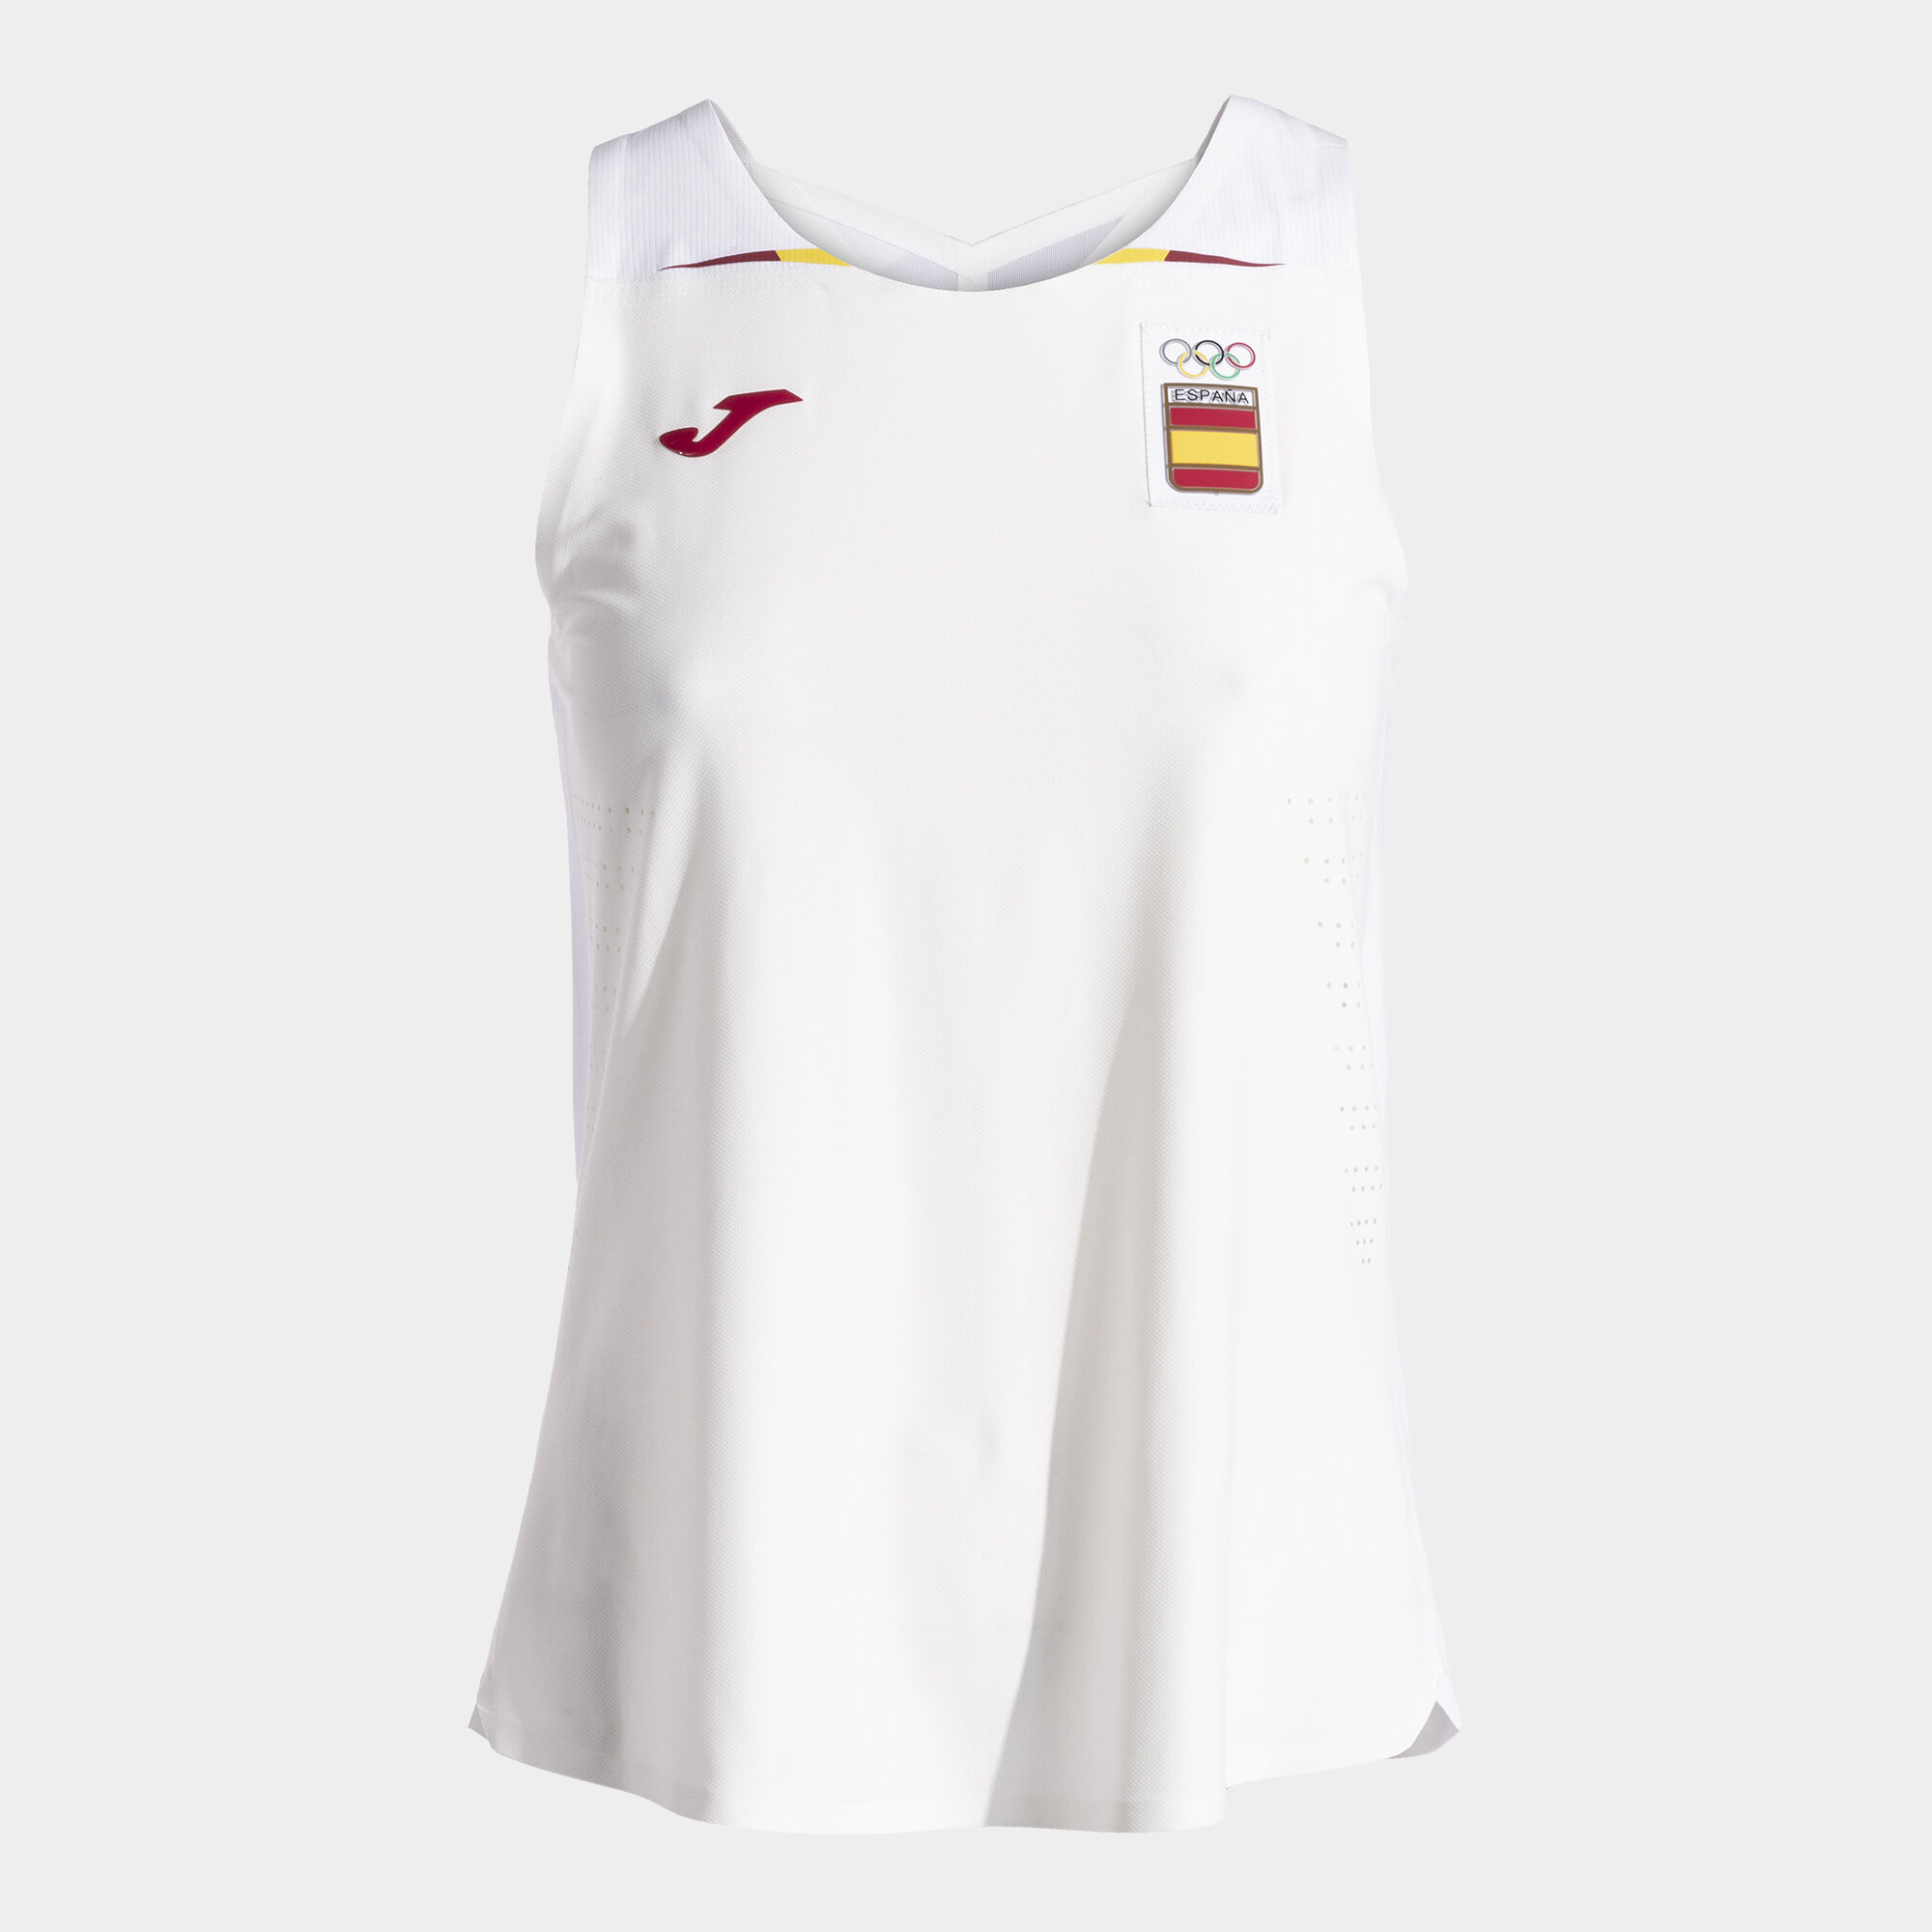 Camiseta tirantes podium Comité Olímpico Español mujer